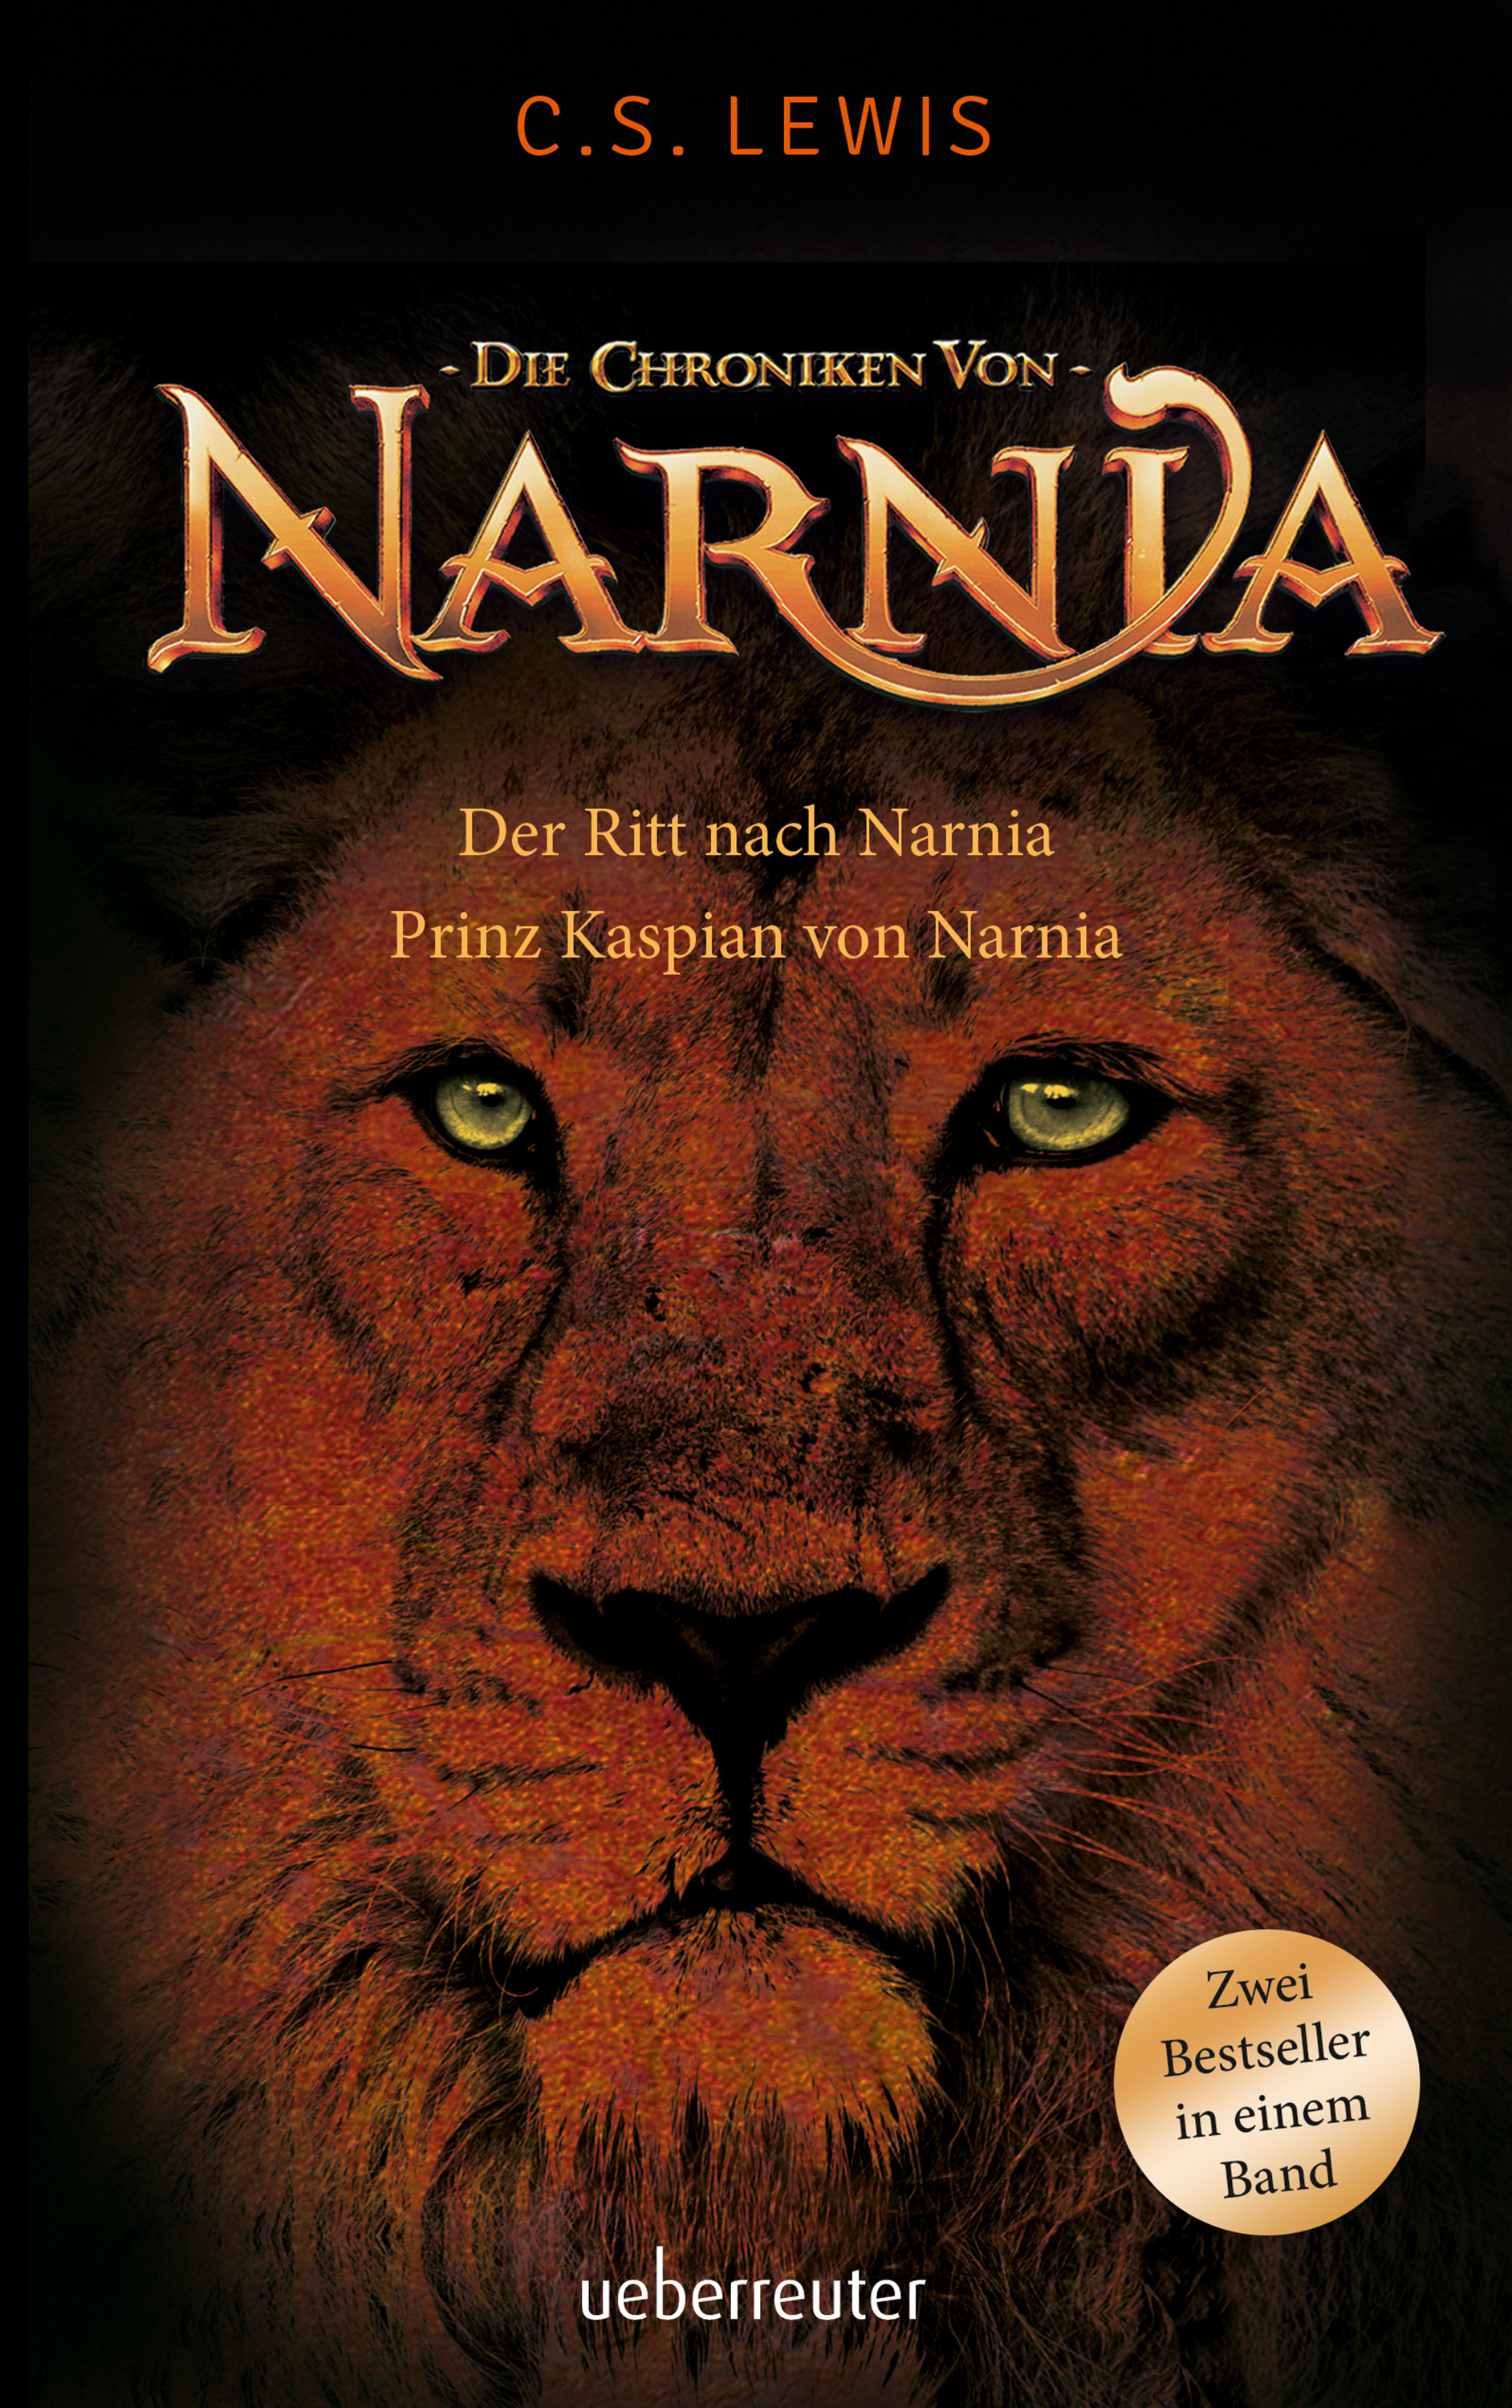 Ritt nach Narnia/Prinz Kaspian von Narnia - Die Chroniken von Narnia Band 3 + 4|Zwei Bestseller in einem Band - Paperbackausgabe